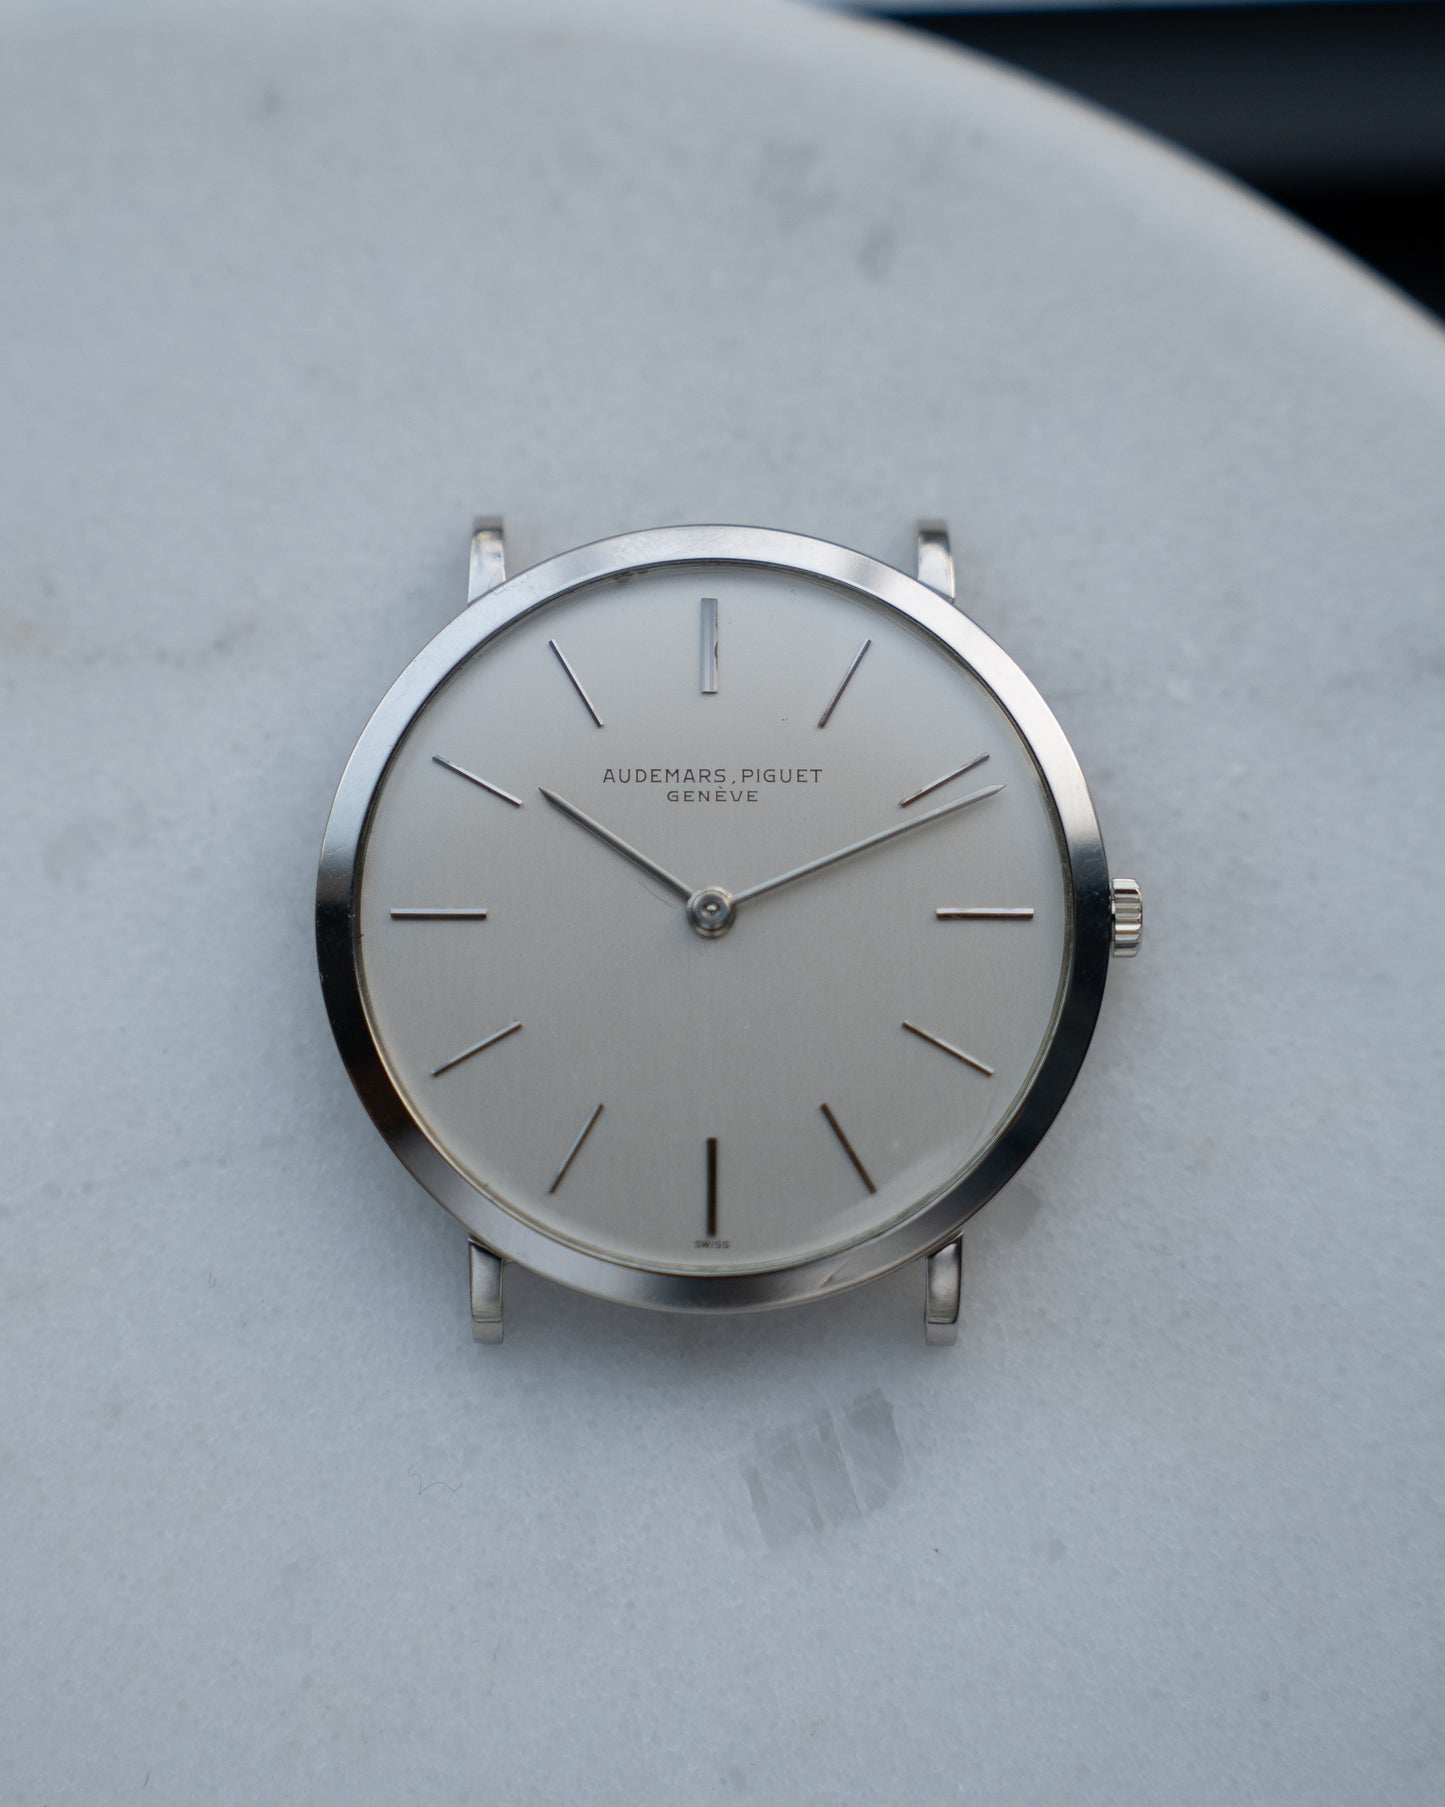 Audemars Piguet White Gold Ultra thin dress watch, Caliber 2001 from 1970's